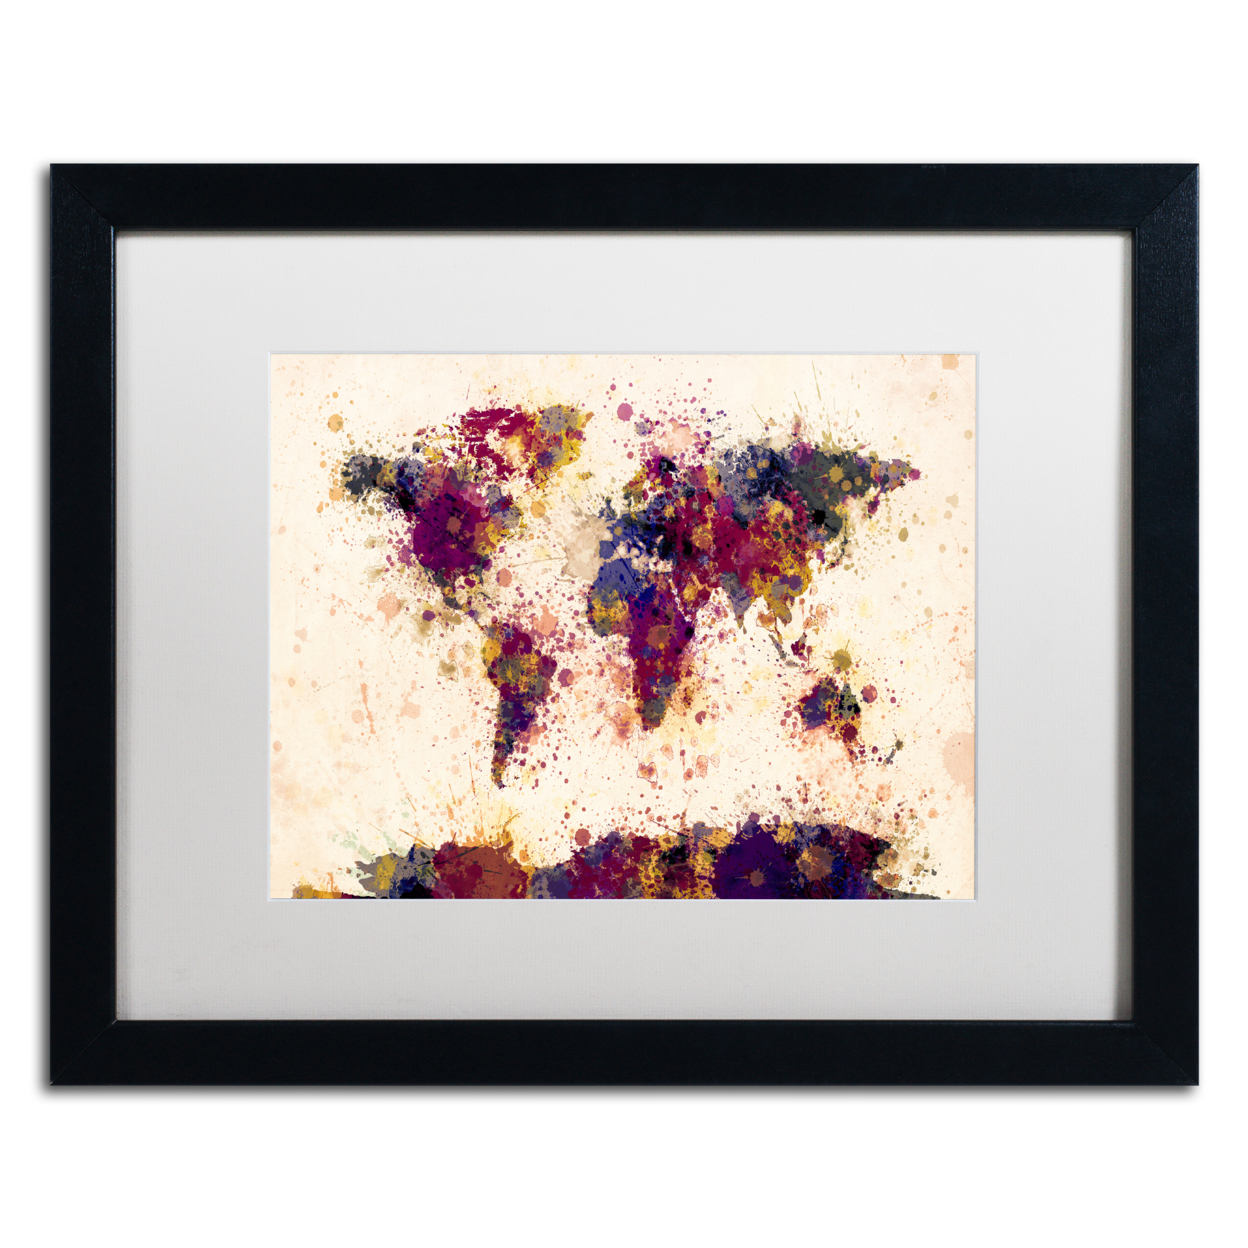 Michael Tompsett 'World Map Paint Splashes 2' Black Wooden Framed Art 18 X 22 Inches